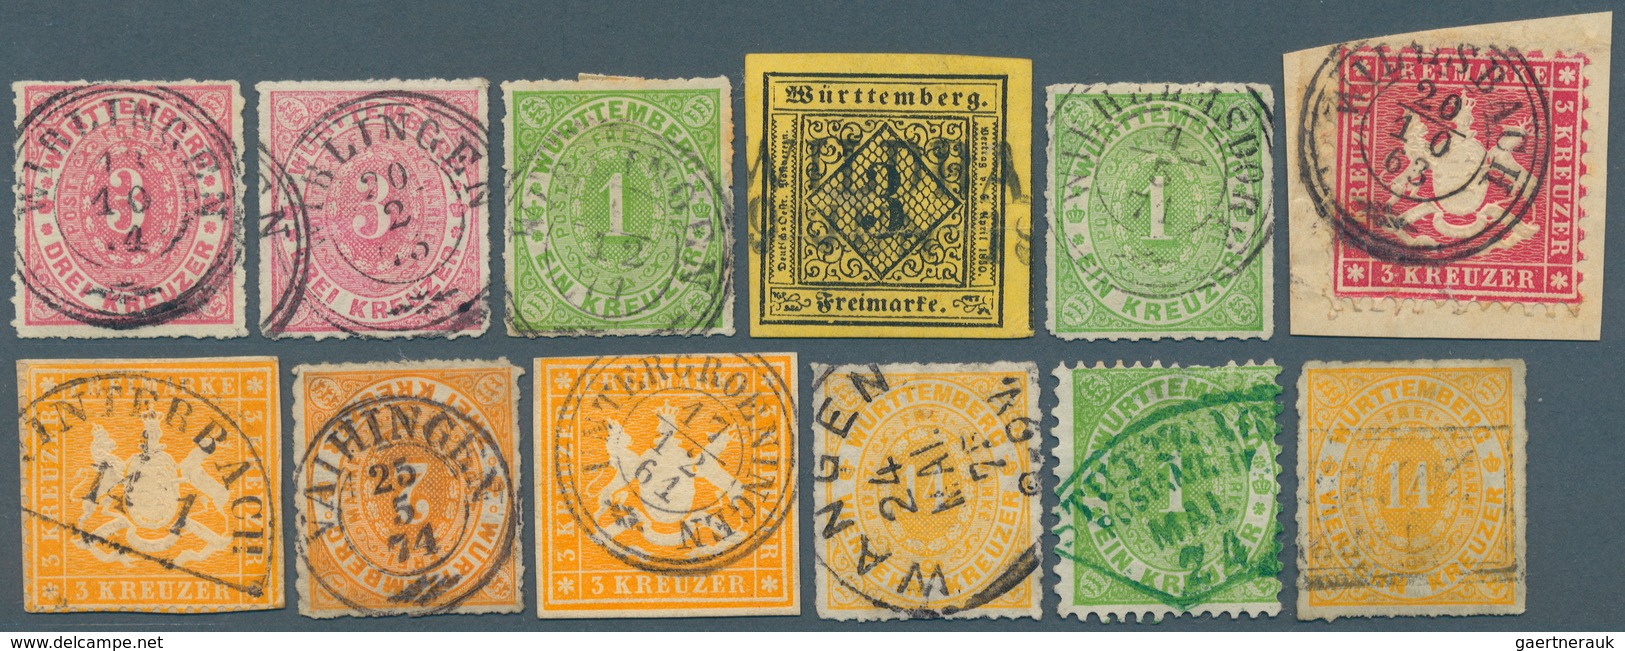 Württemberg - Stempel: 1851/1874. Sehr umfangreiche STEMPELSAMMLUNG mit über 1.400 Stück (n.A.d.E.)